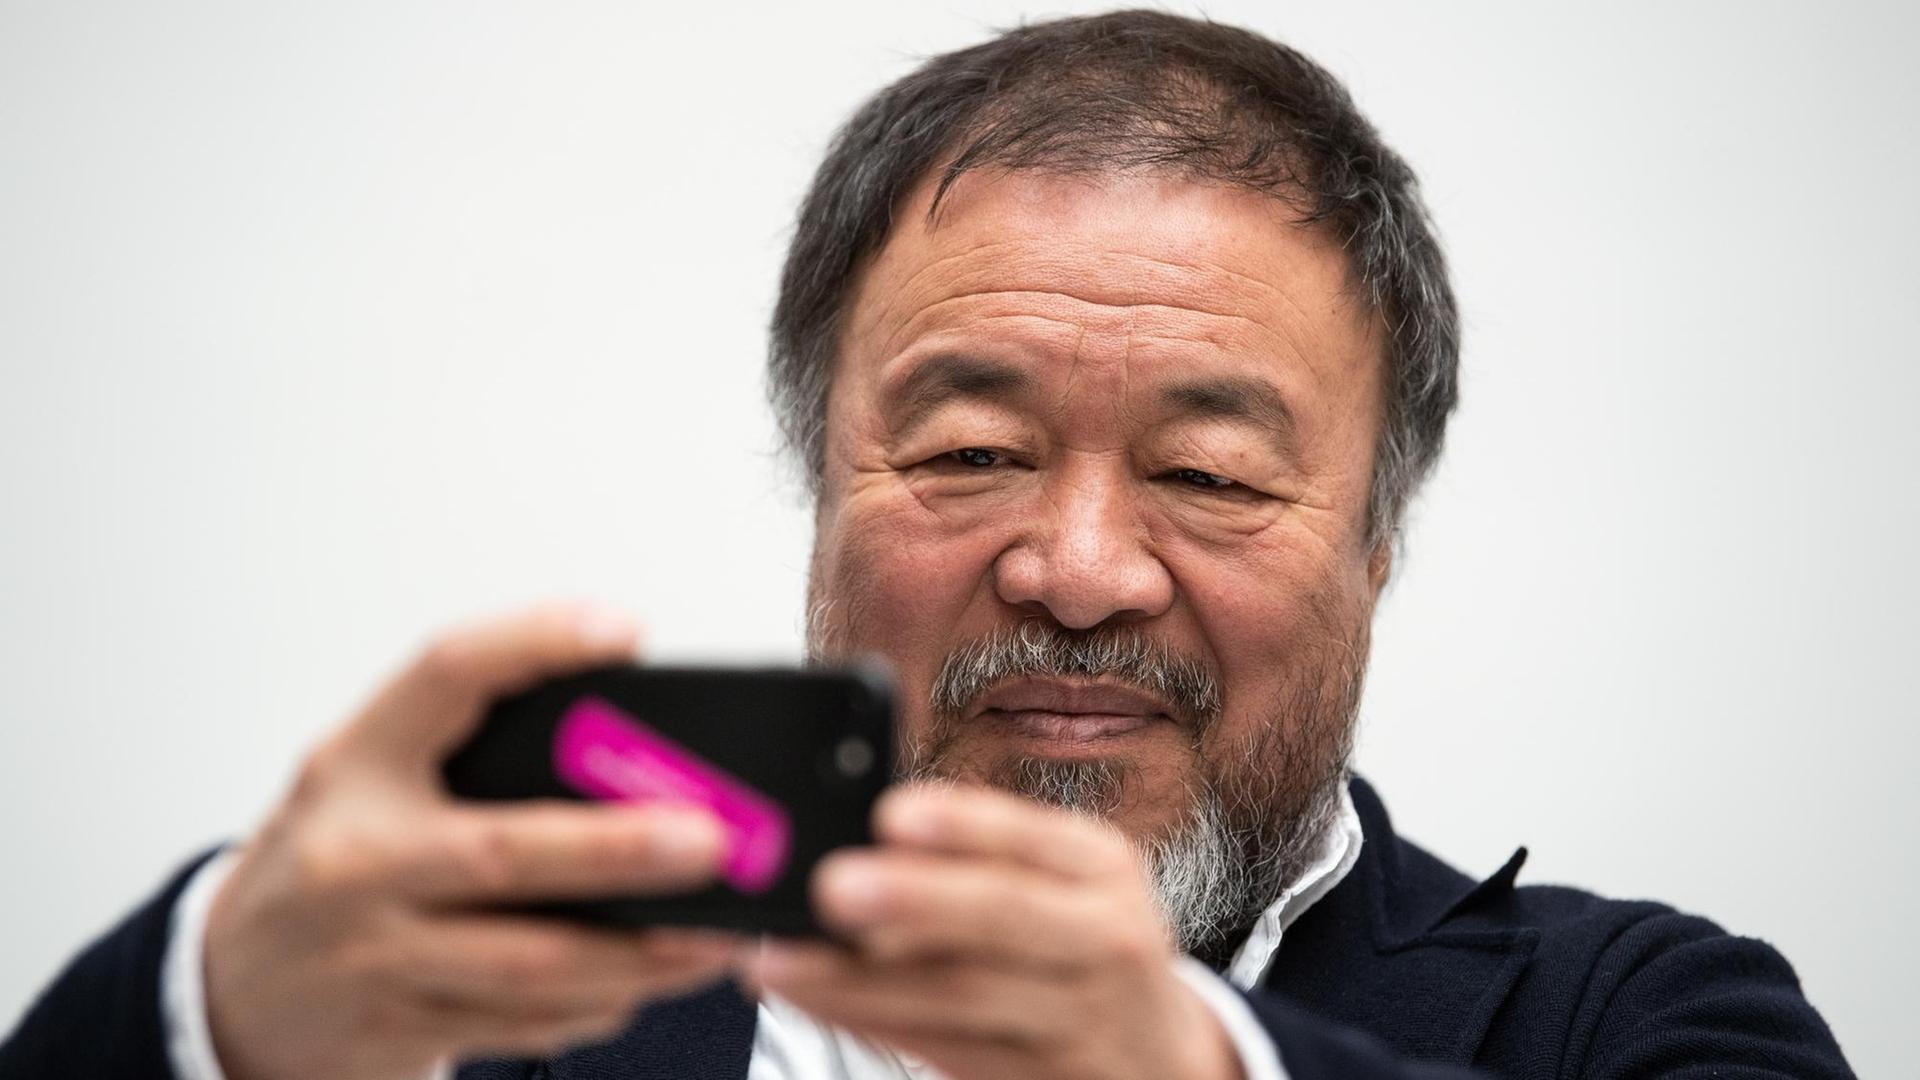 Der Künstler Ai Weiwei bei der Präsentation seiner Ausstellung in Düsseldorf